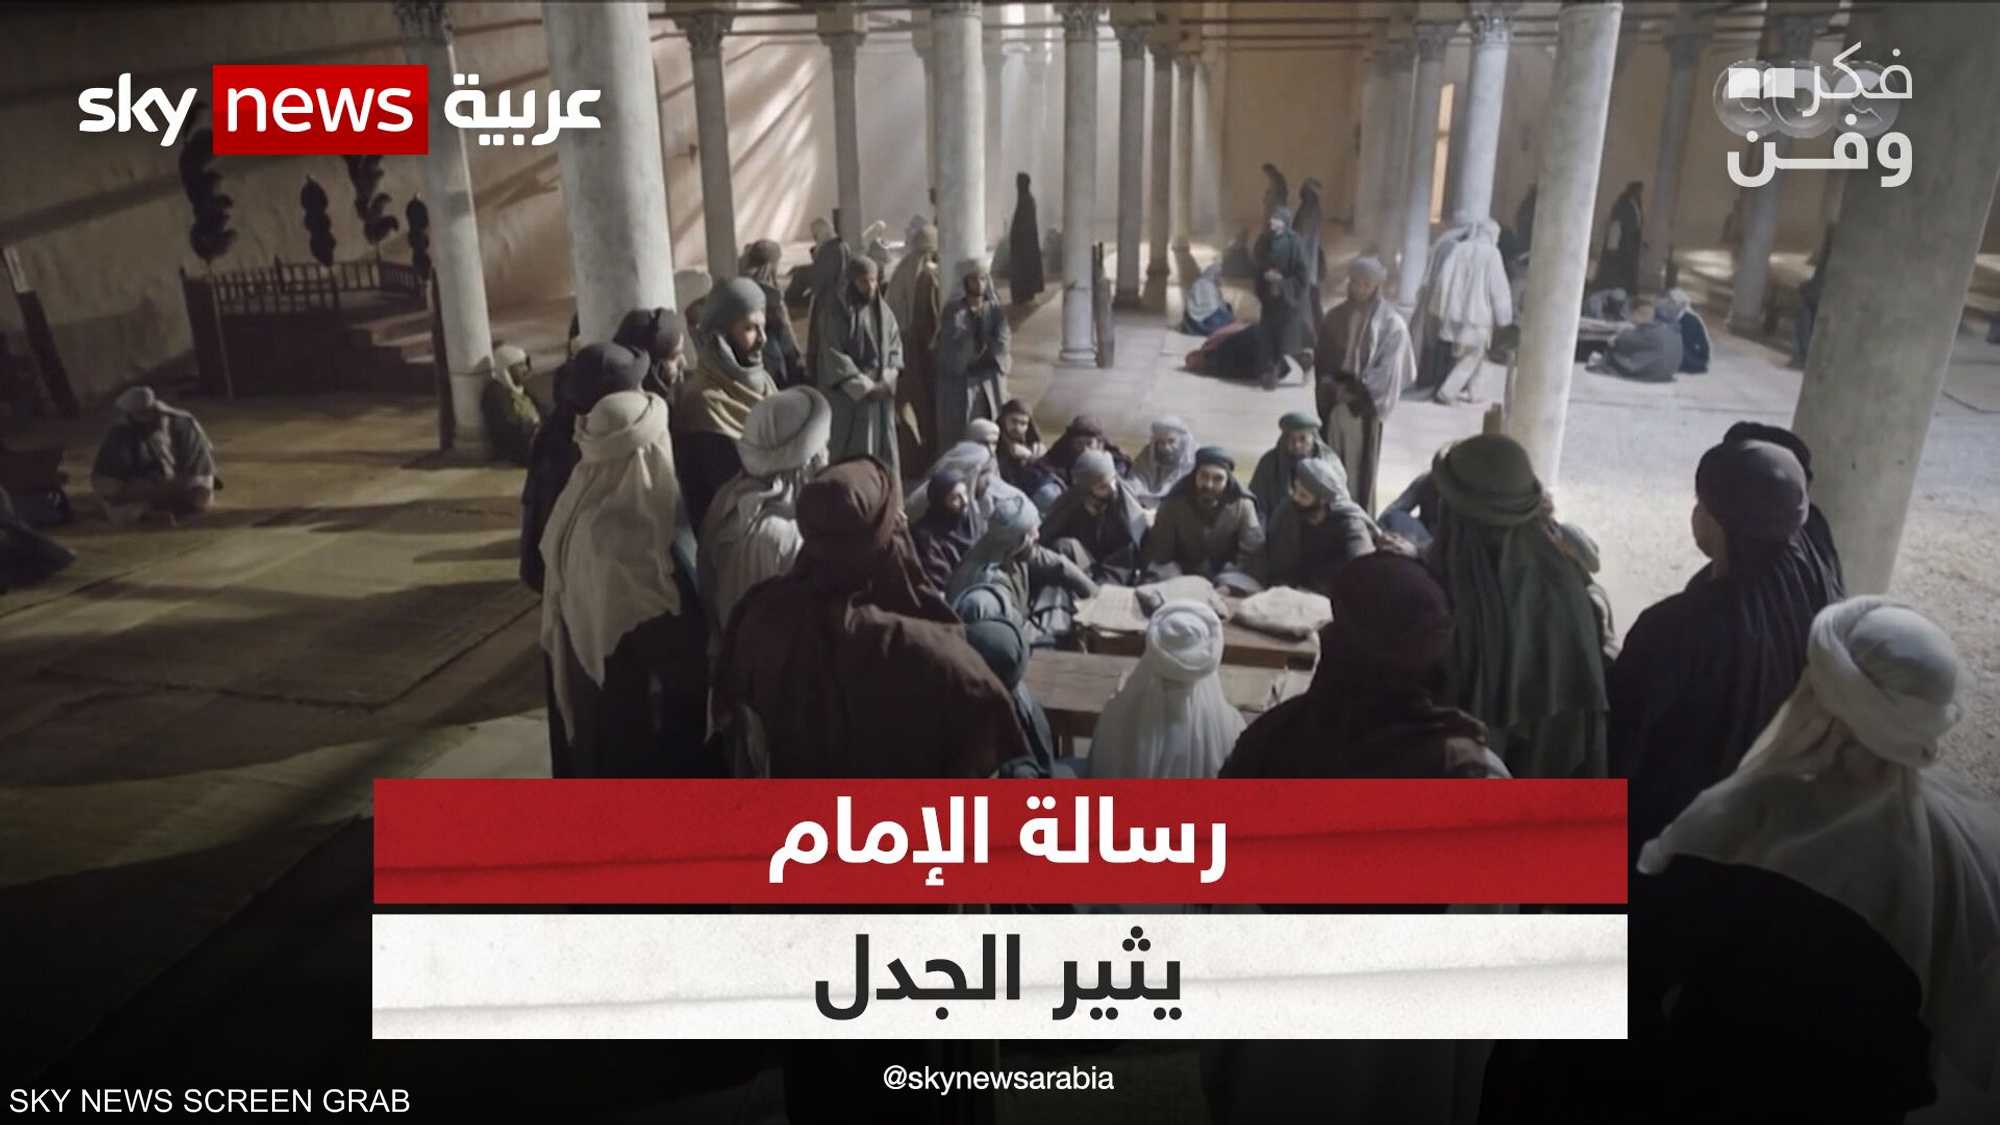 مسلسل رسالة الإمام يثير الجدل واللغط في مصر والعالم العربي